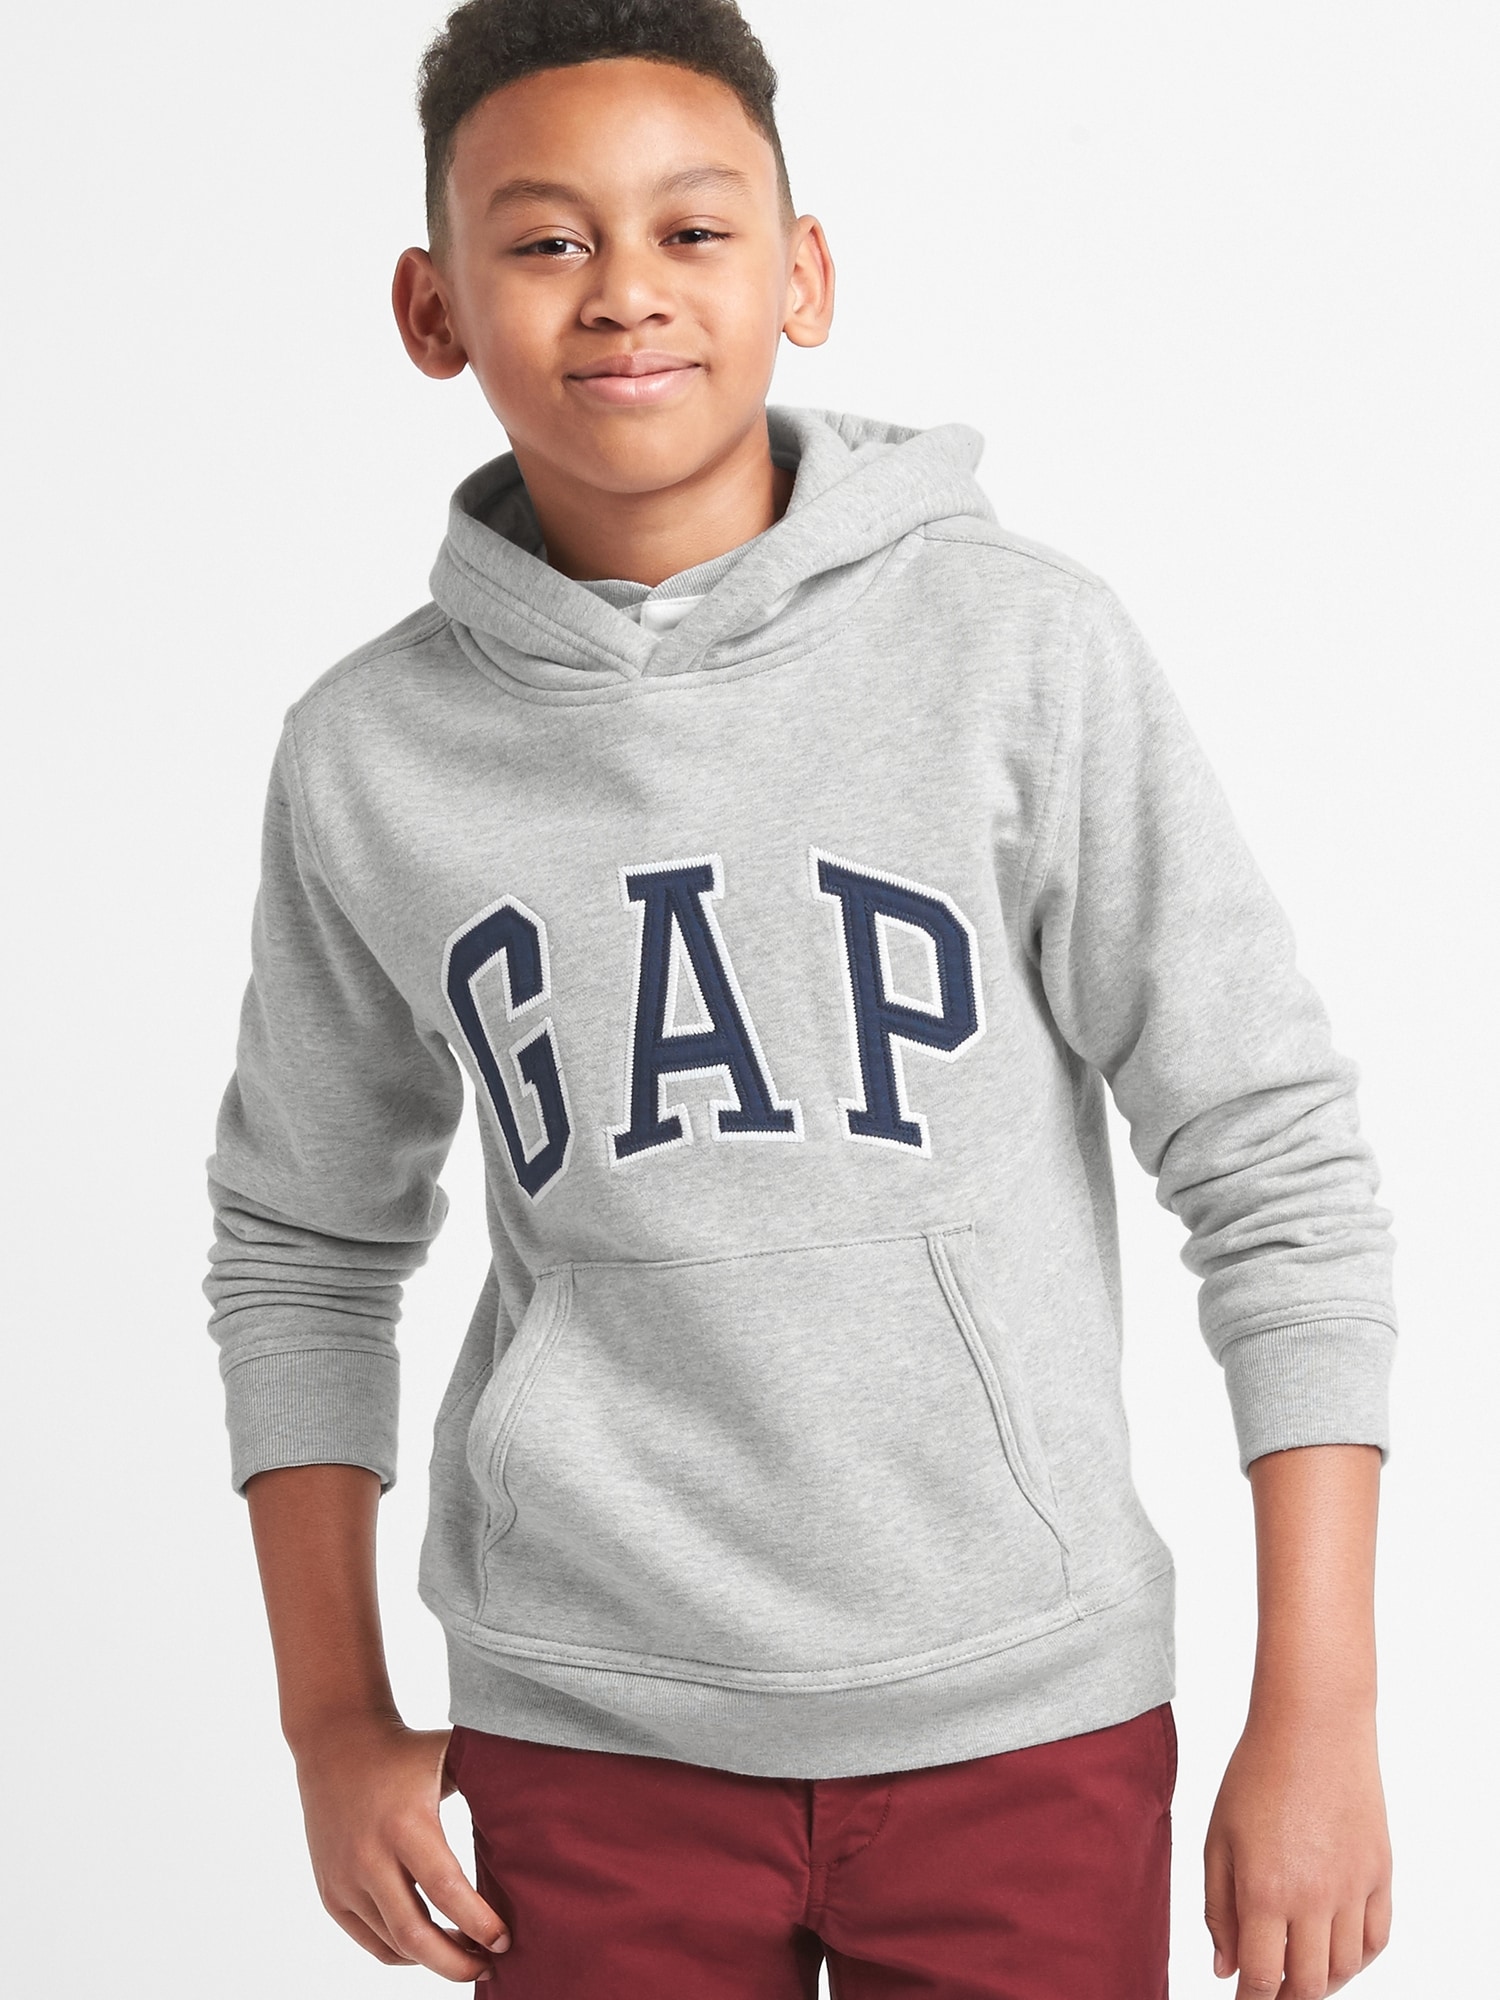 gap kids jumpers